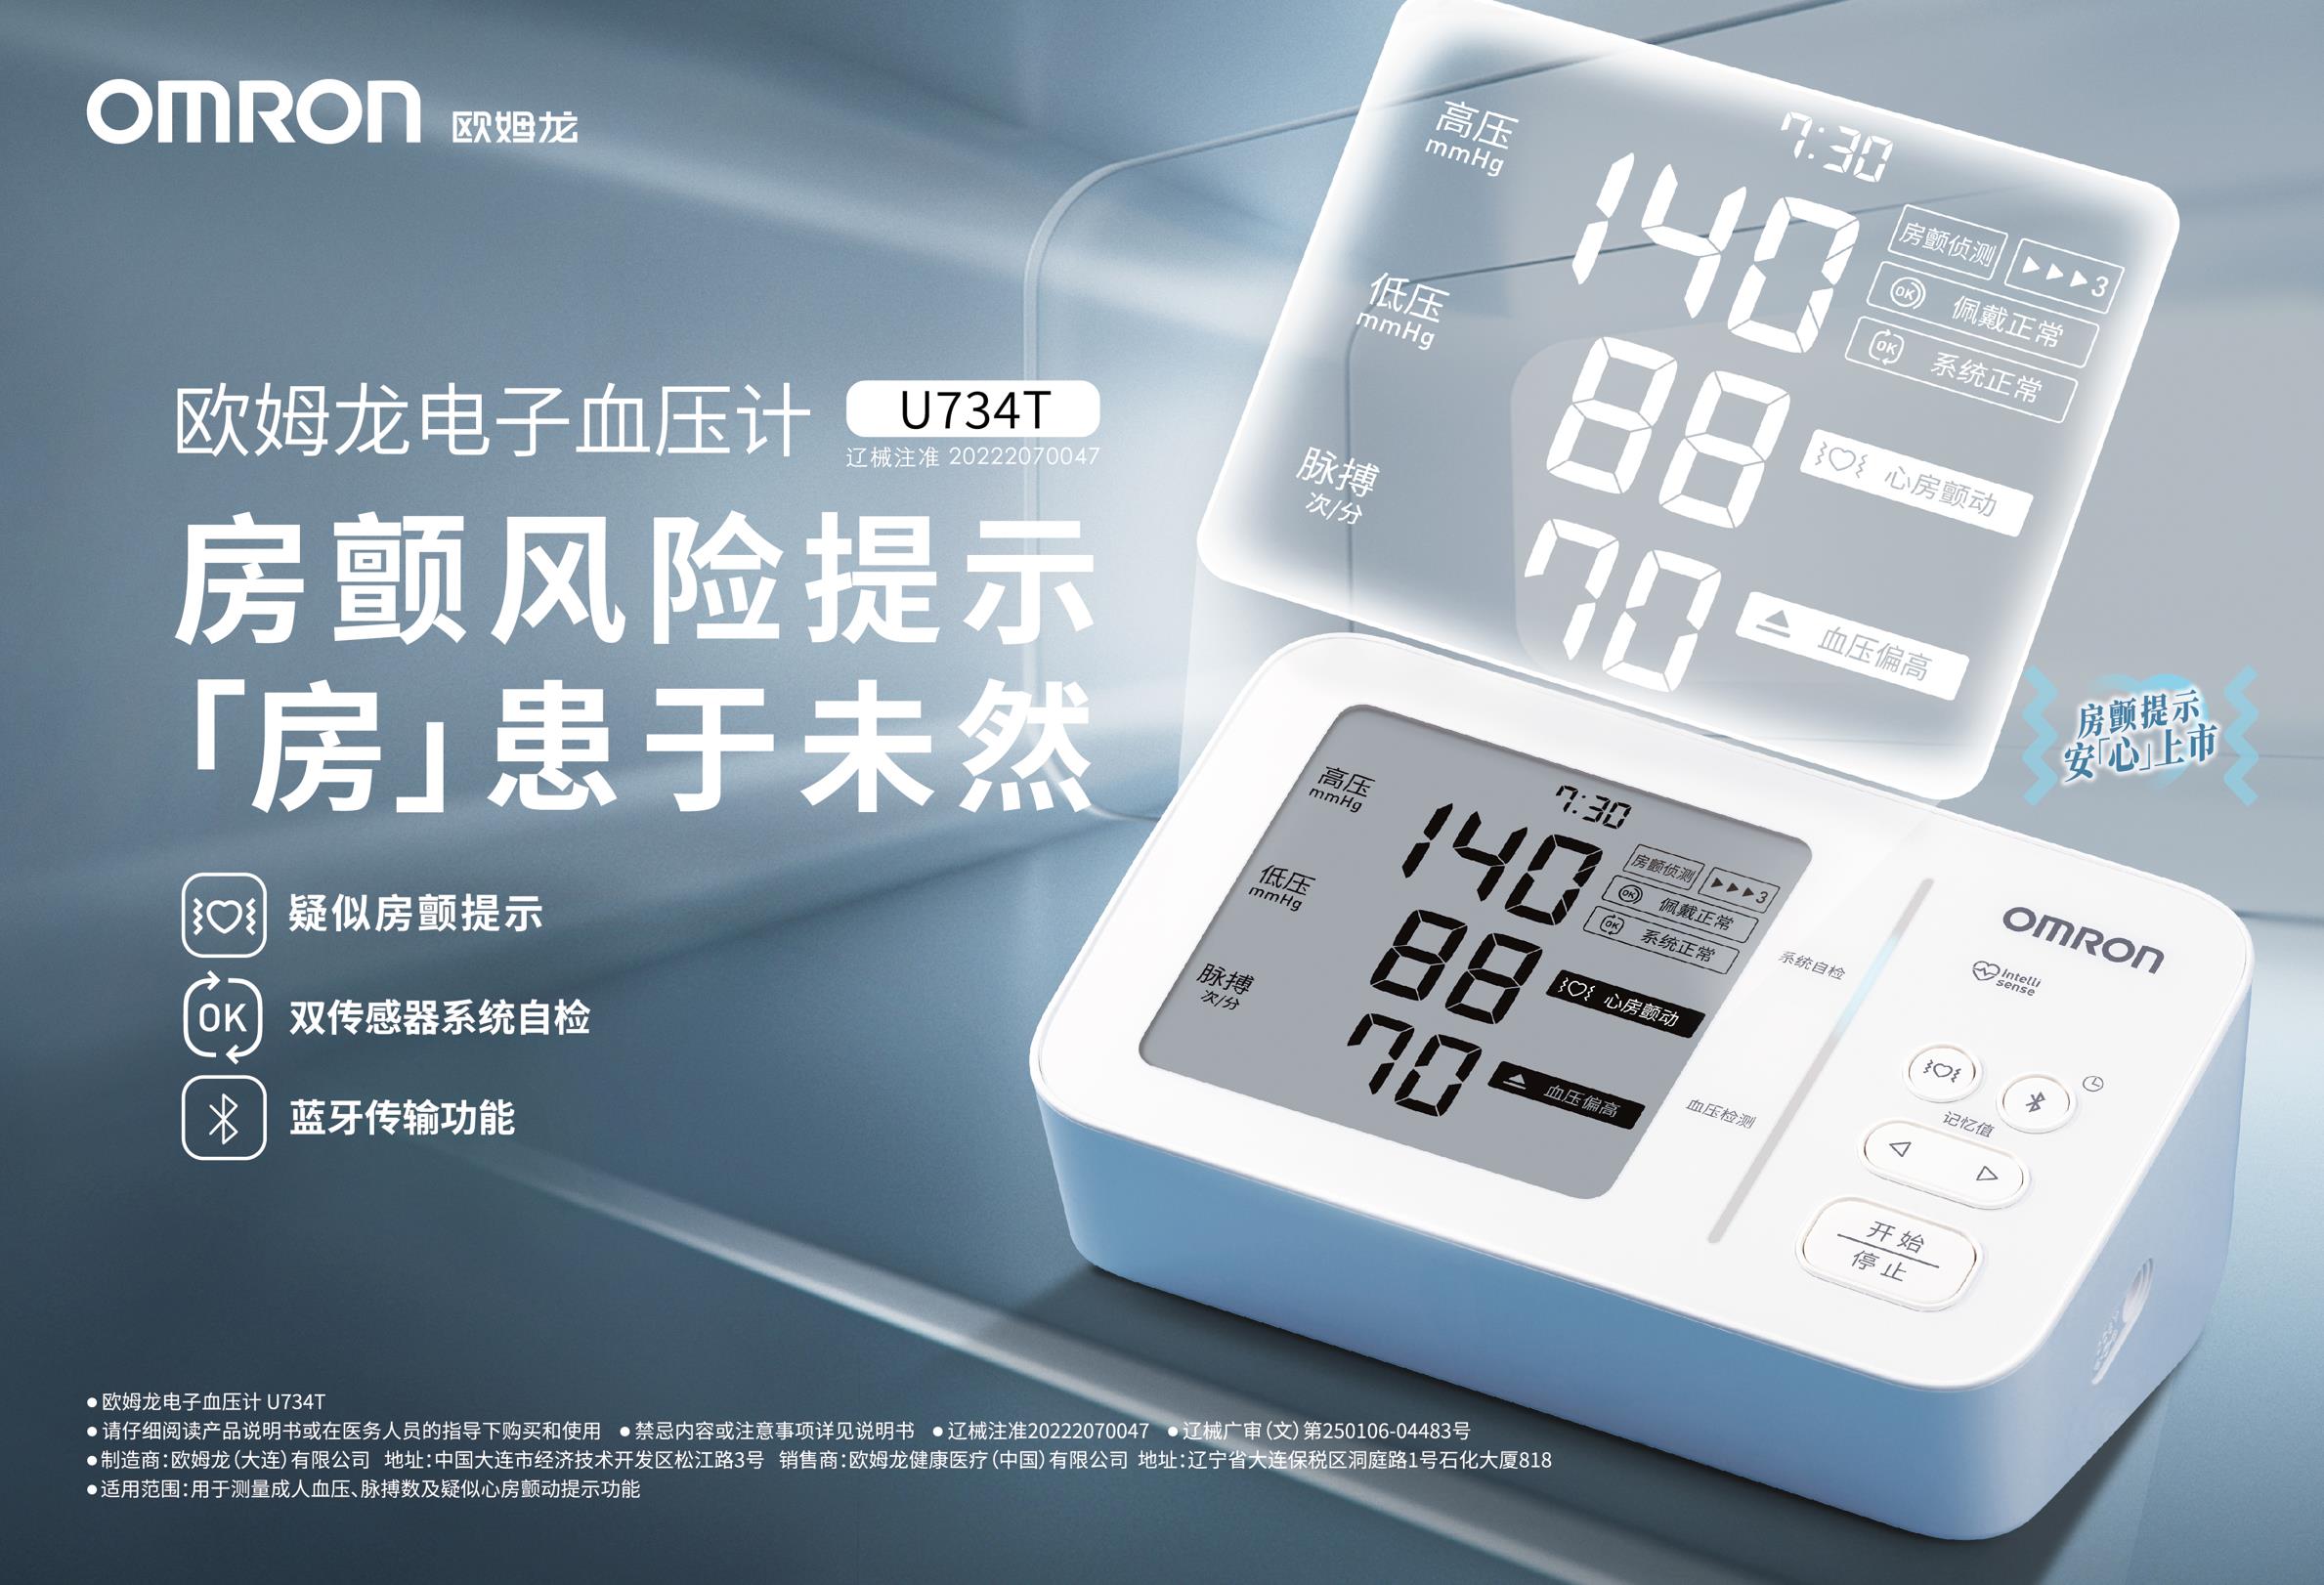 欧姆龙发售新款房颤血压计，助力房颤早诊早治